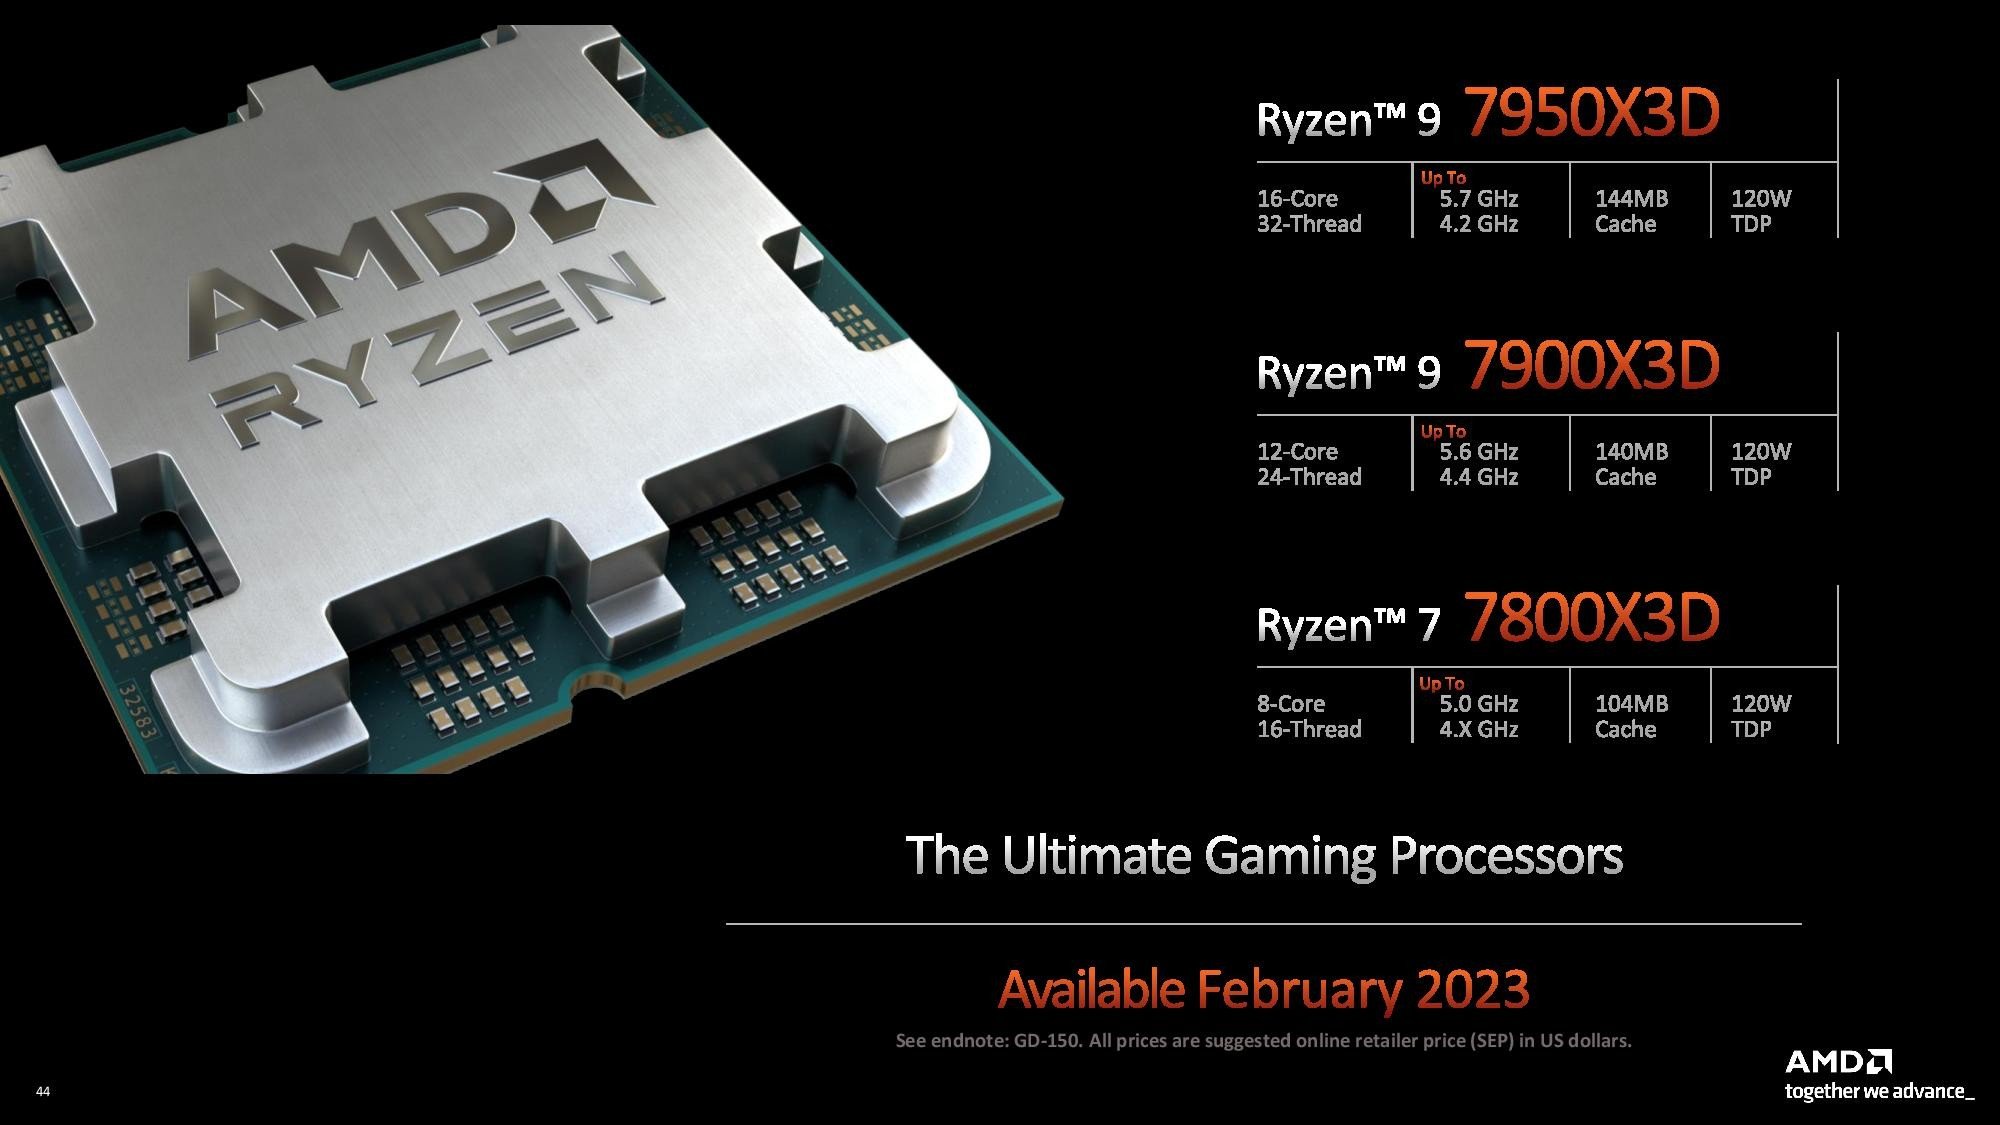 3D V-Cache Destekli Ryzen 7000X3D Tanıtıldı- AMD Ryzen 9 7950X3D, Ryzen 9 7900X3D, Ryzen 7 7800X3D